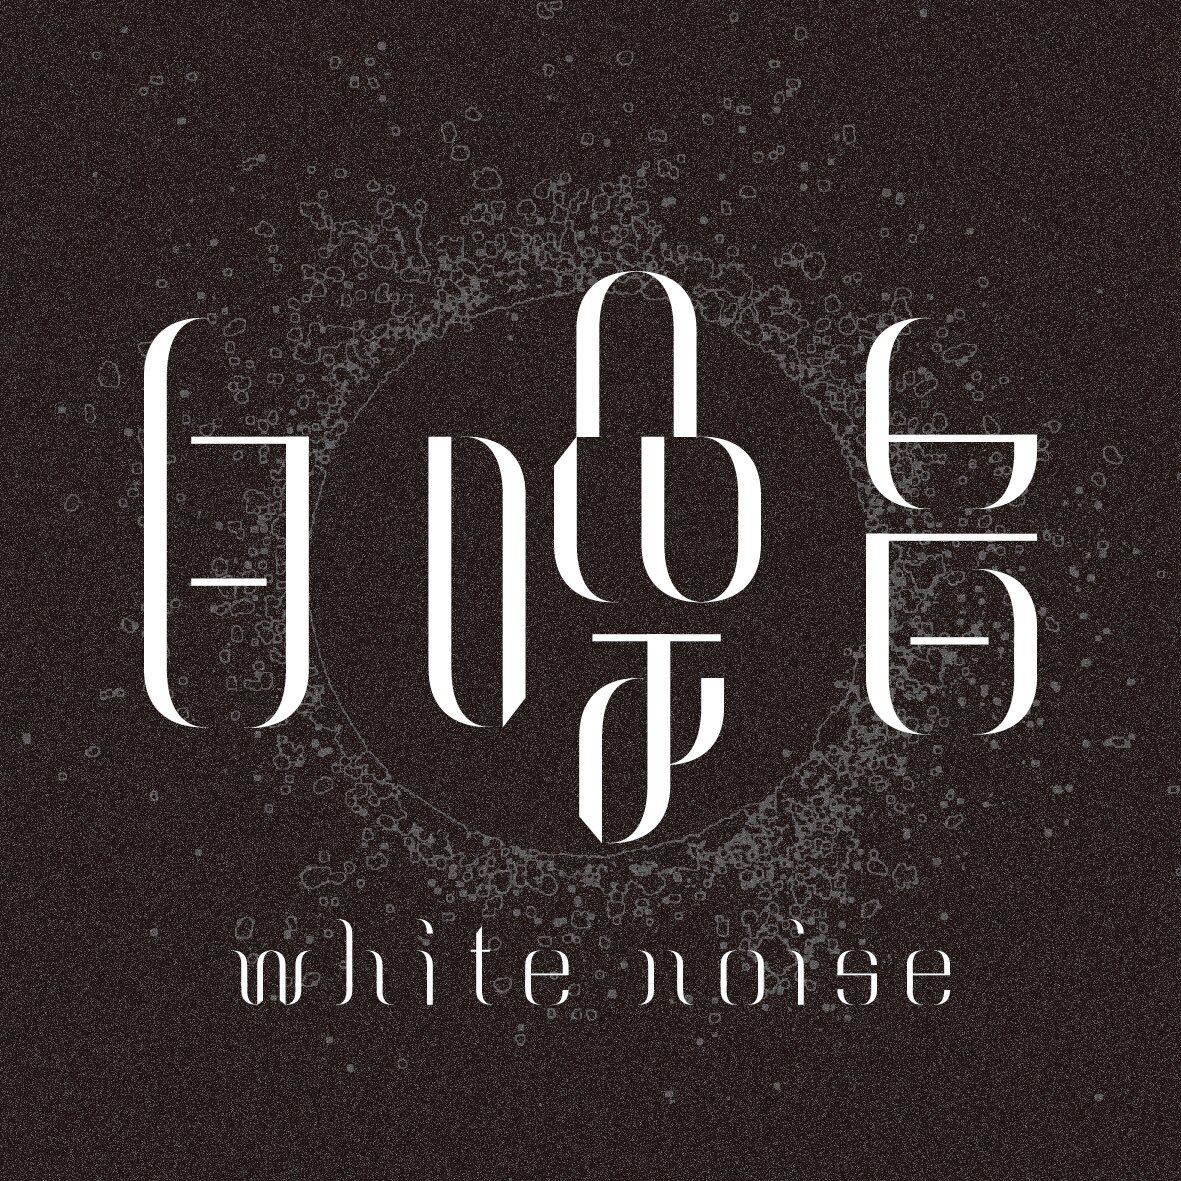 Steam Workshop::White Noise